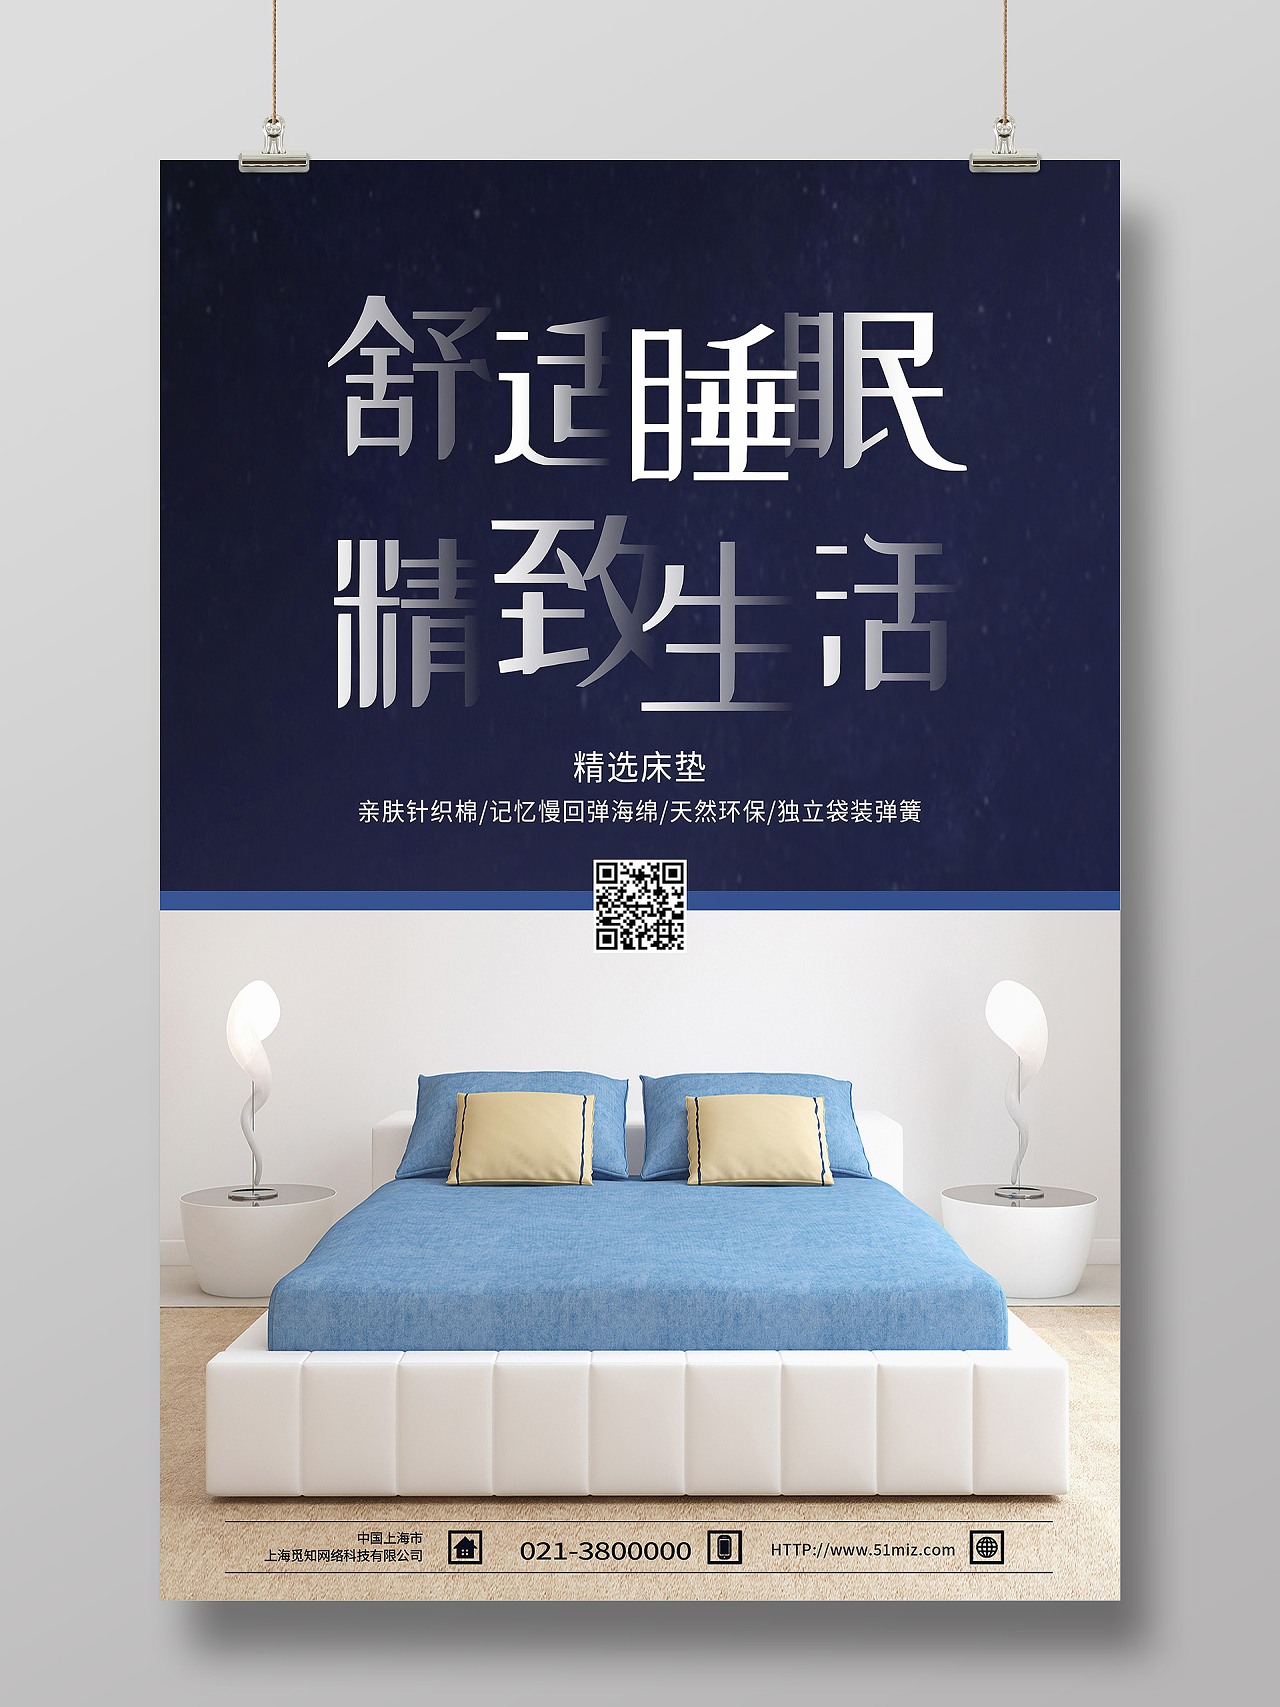 蓝色简约舒适睡眠精致生活床垫海报矿泉水海报